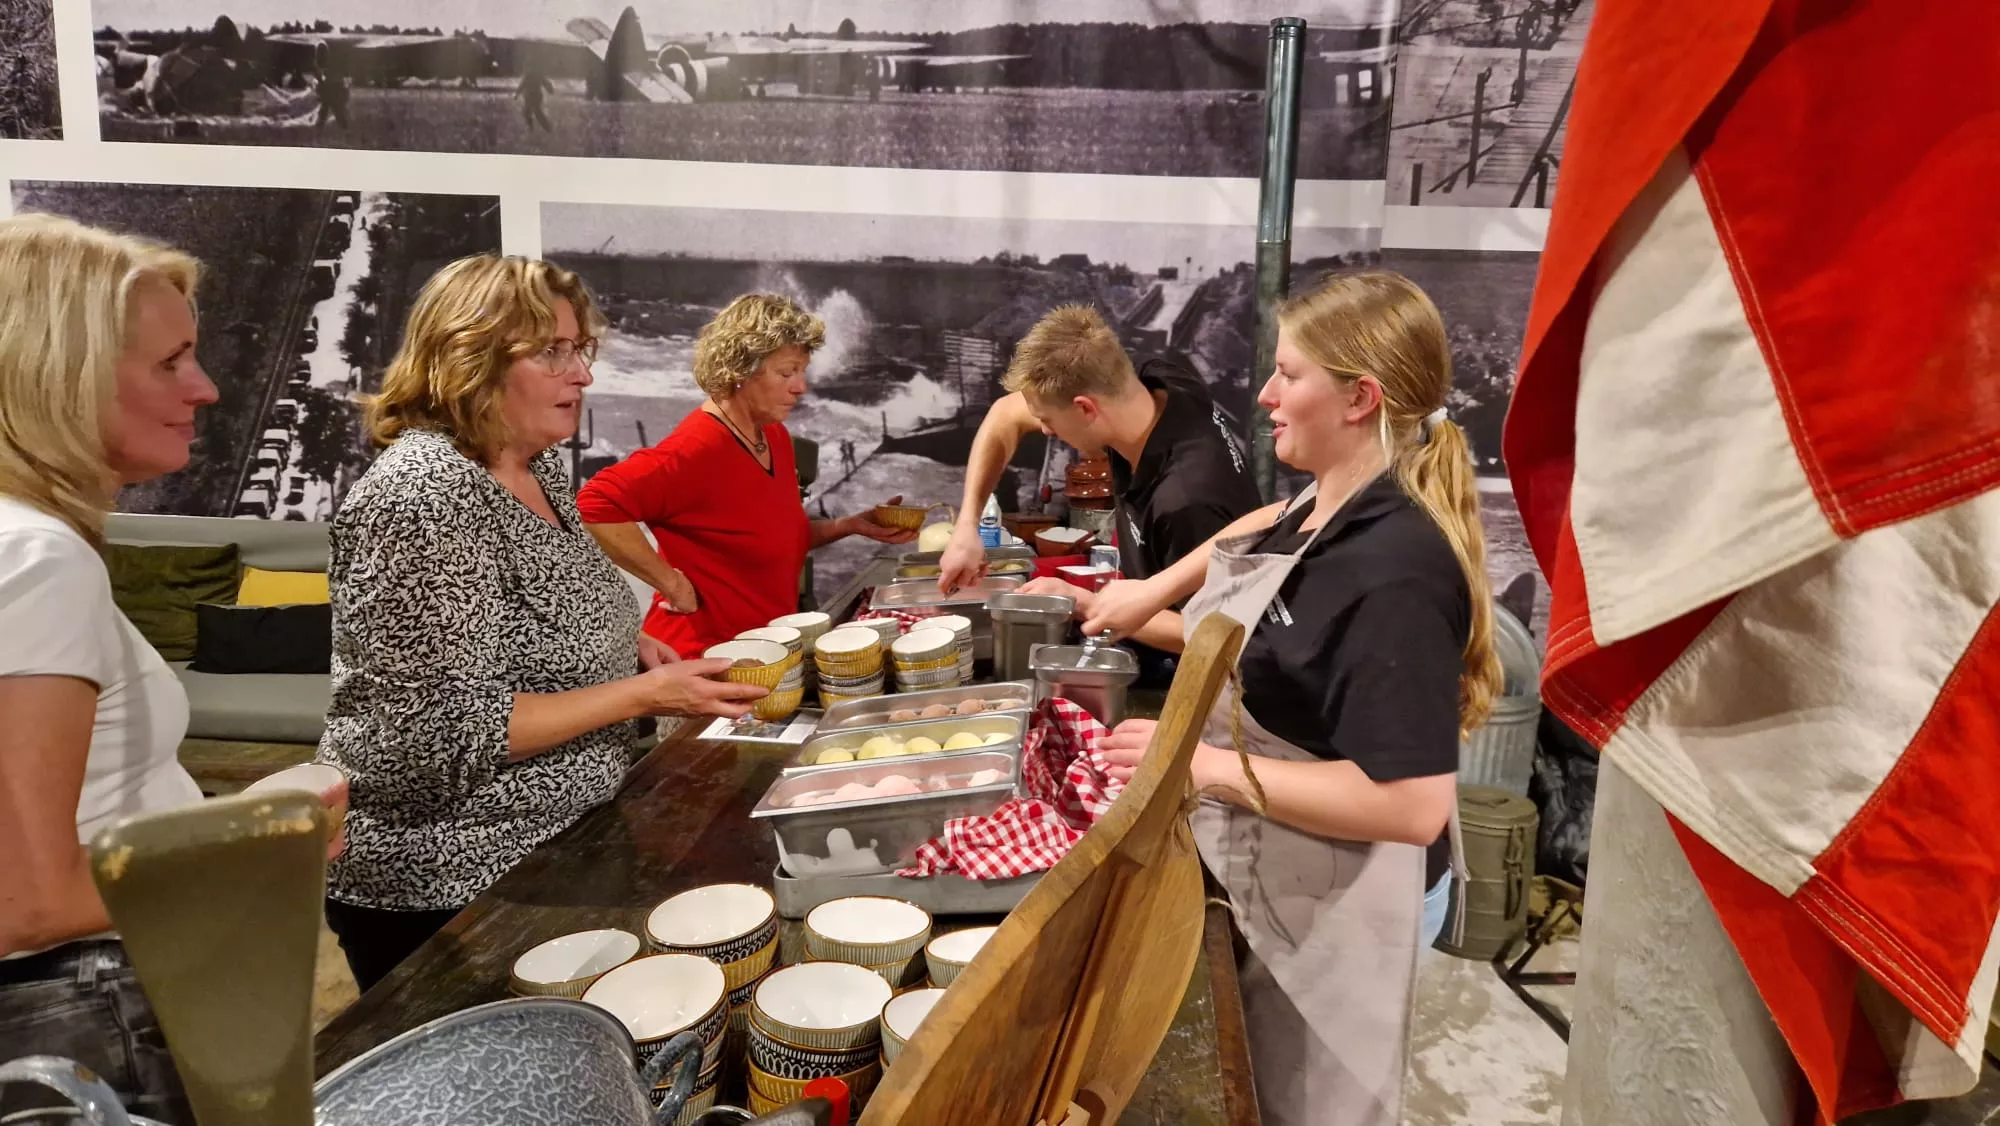 Bezoekers scheppen ijs op van het schepijsbuffet en genieten van lekker avondeten tijdens een leuk dagje uit in een leuk museum over de W.O.II